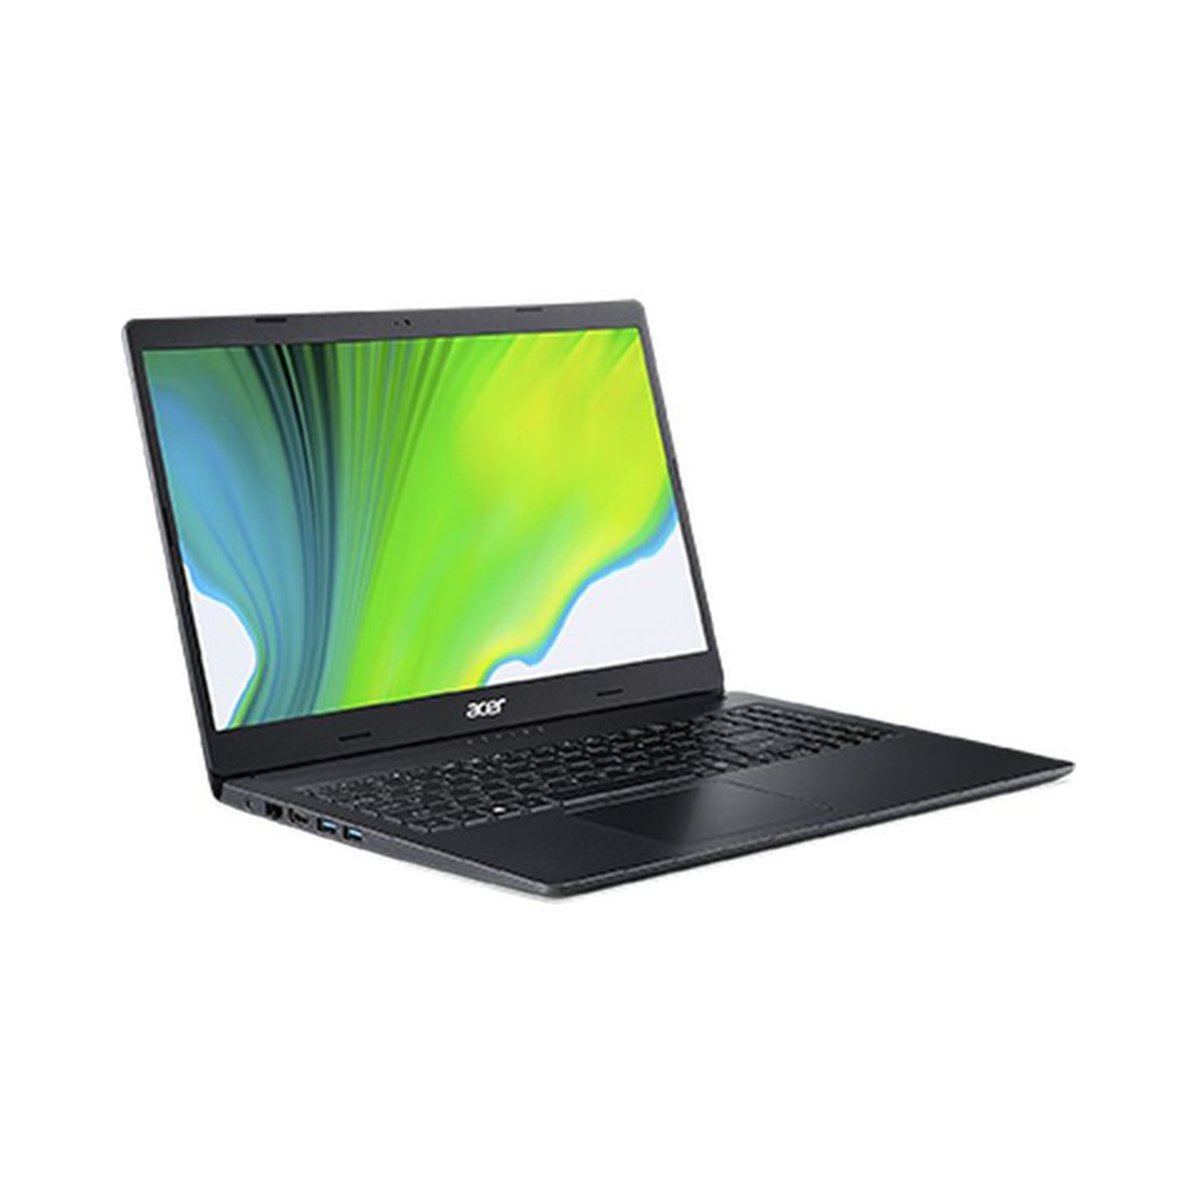 Acer Aspire 3 A315-NX.HZREM.013,Laptop,Core i5-1035G1,4GB RAM, 512GB SSD,2GB Mx330,Win10,15.6inch FHD,Black,English/Arabic Keyboard